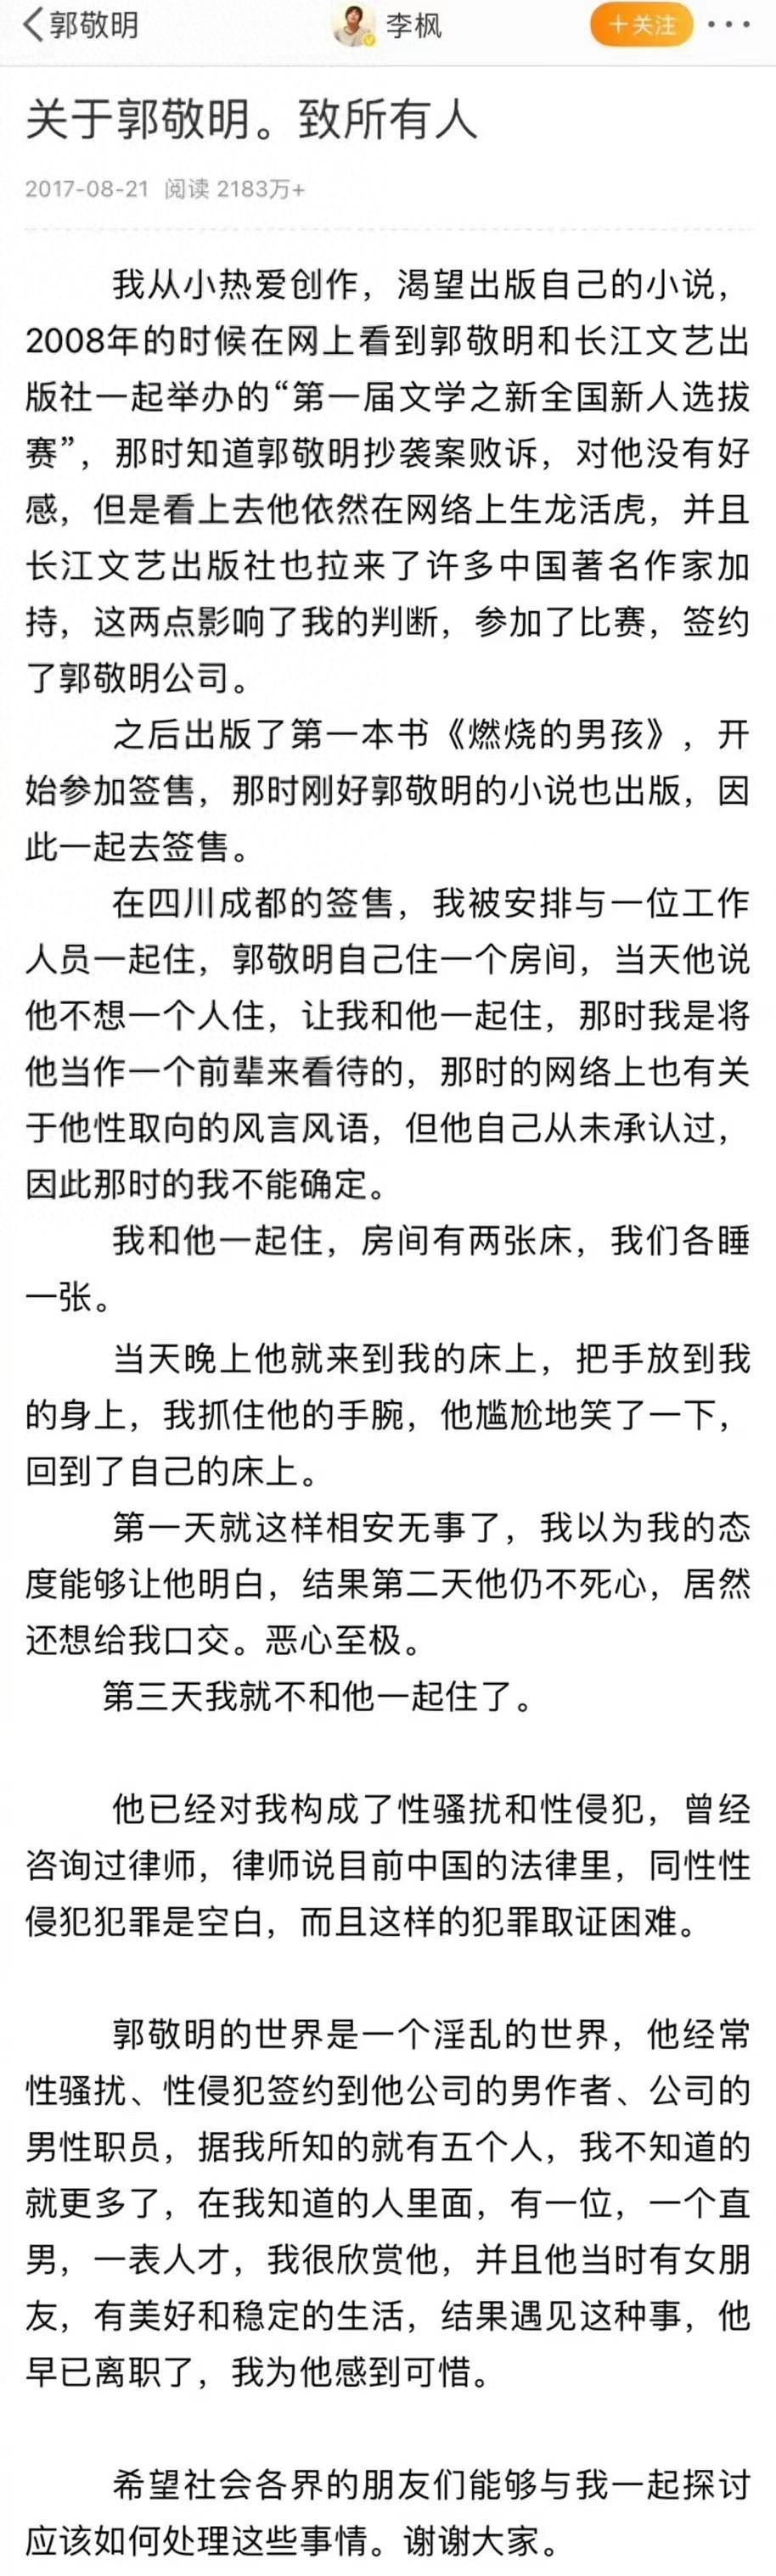 六年前，郭敬明曾起诉李枫诽谤罪被驳回，李枫再发文谈被其性骚扰